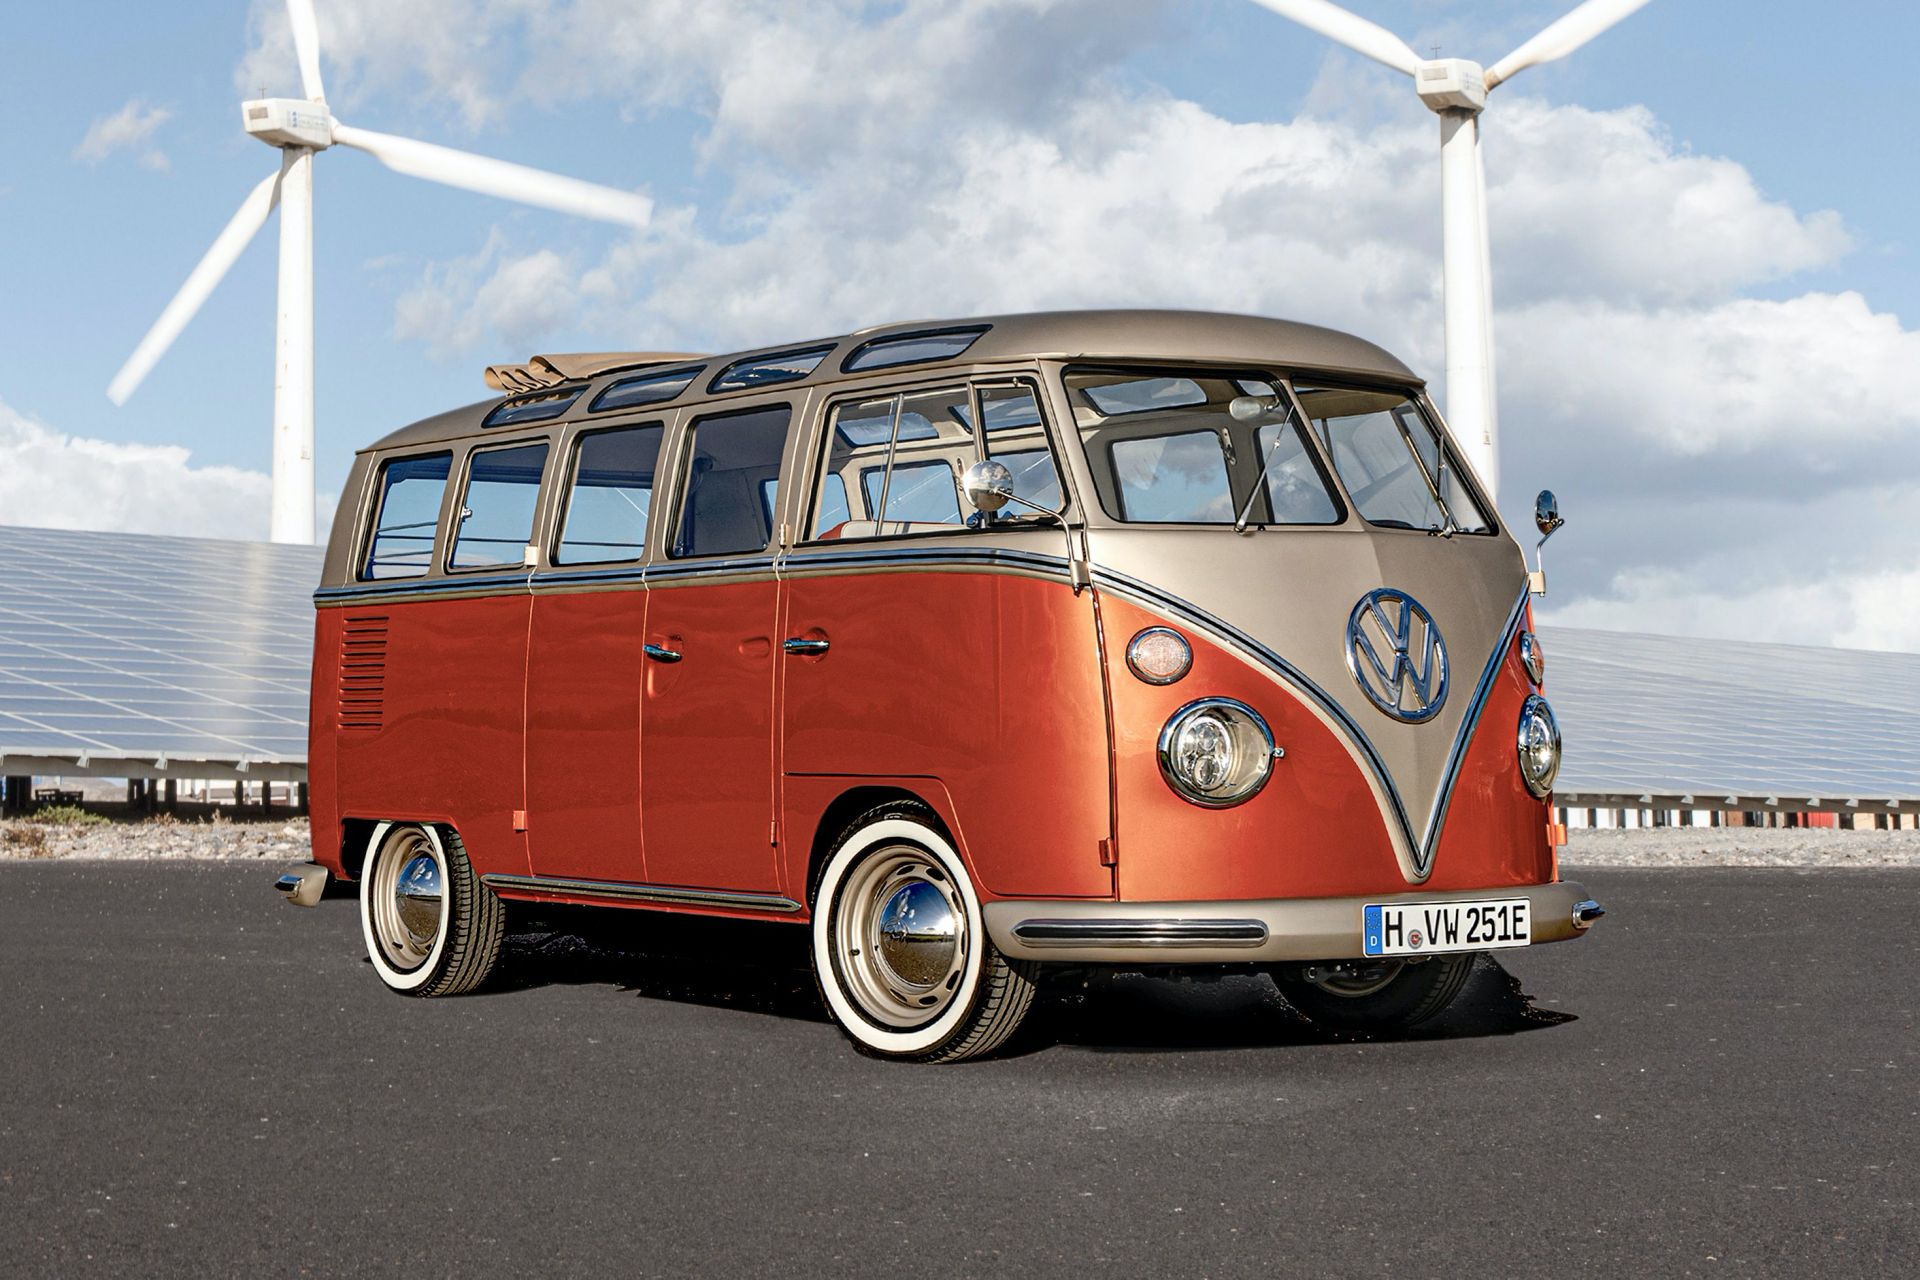 Volkswagen e-Bulli Concept รถยนต์ไฟฟ้าทรงคลาสสิก กลิ่นอายเดิมๆ ที่สายรถเก่าถวิลหา